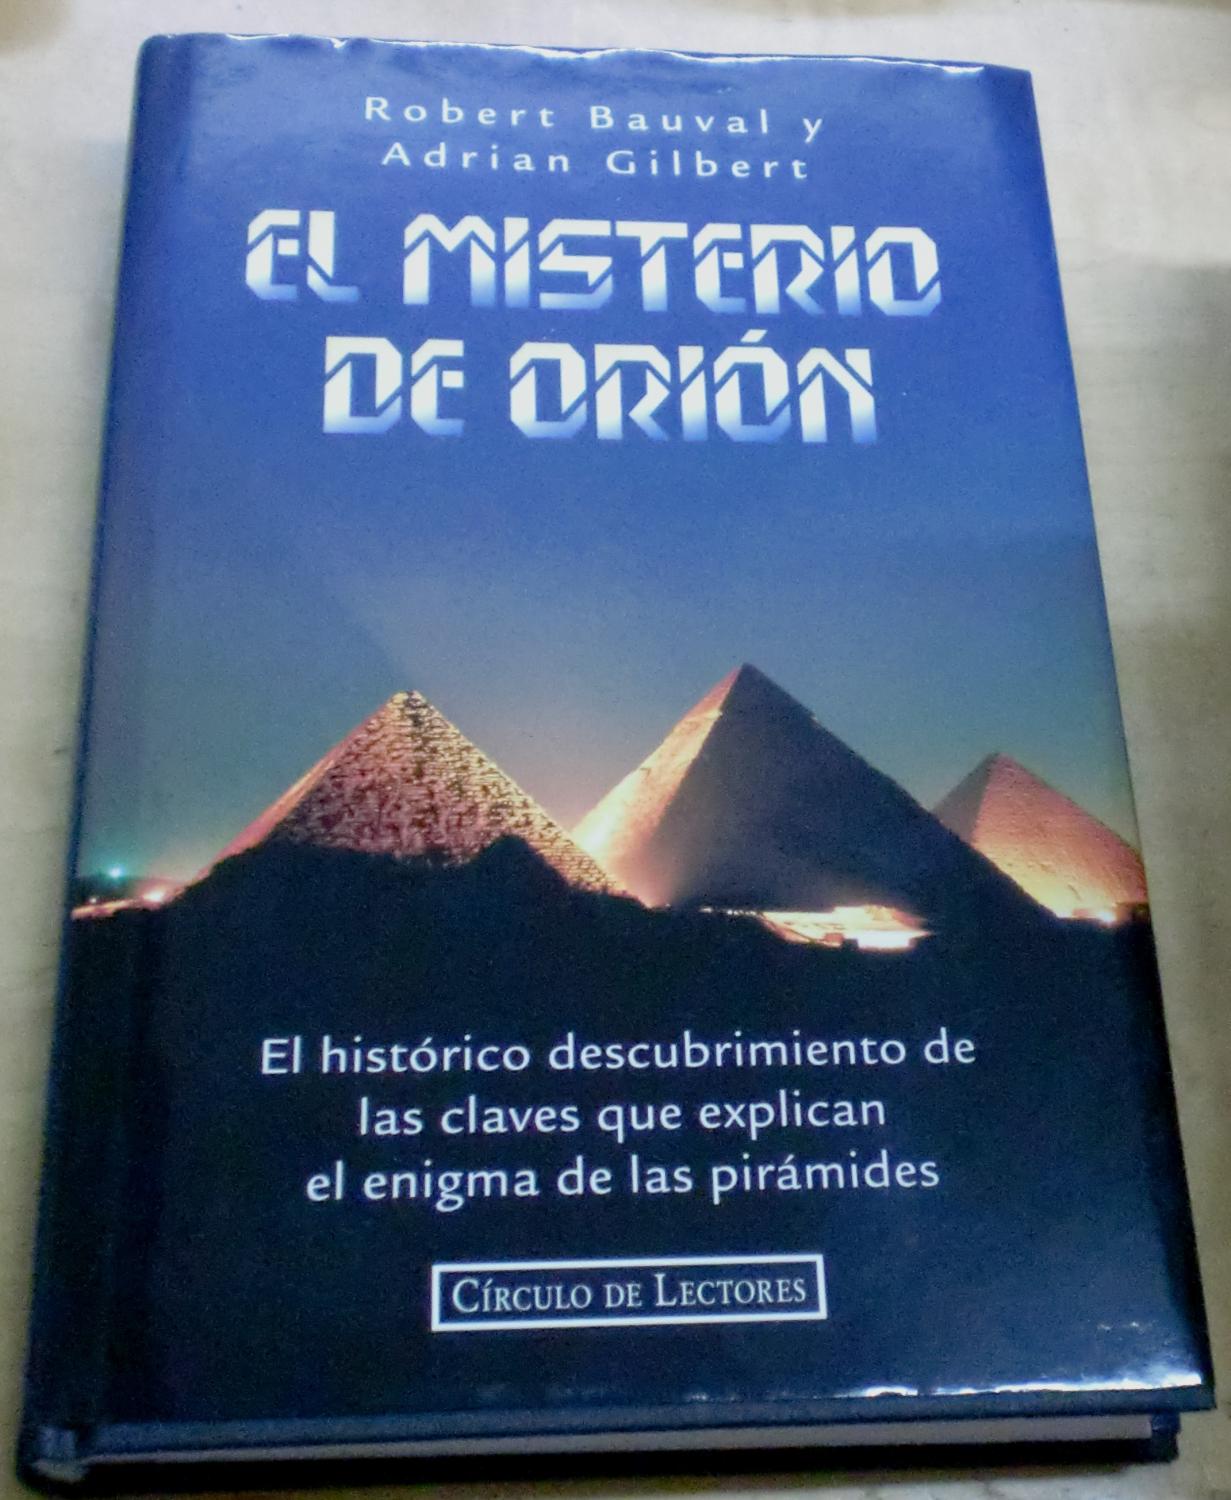 El misterio de Orión. El histórico descubrimiento de las claves que explican el enigma de las pirámides. Traducción César Aira - BAUVAL, ROBERT/GILBERT, ADRIAN